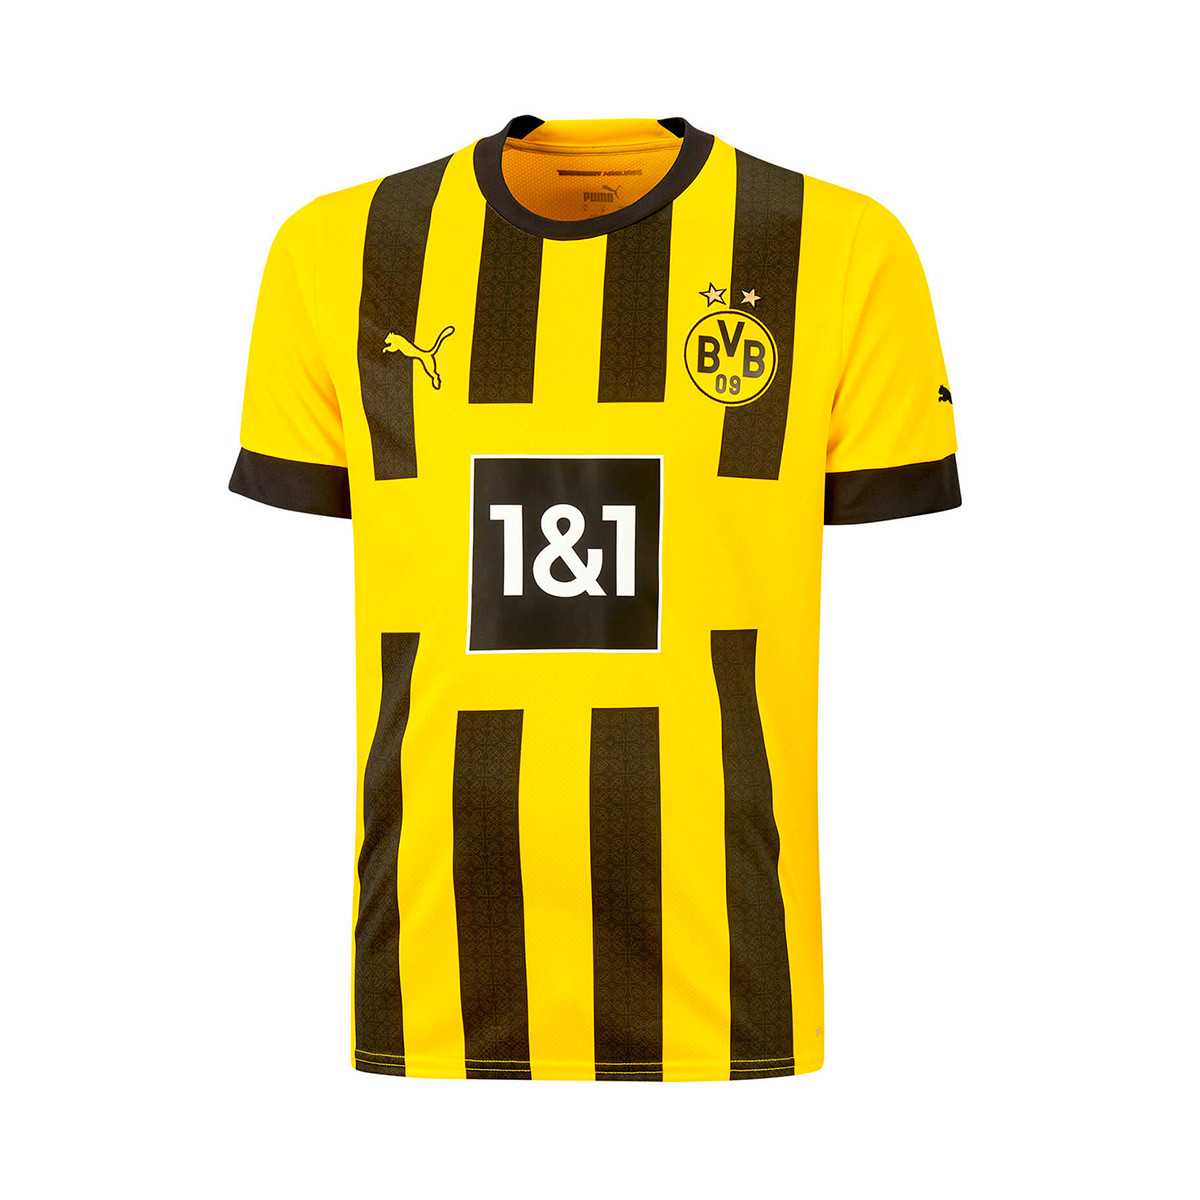 Bộ quần áo đá banh bóng đá BVB Borussia dortmund 1&1 logo thêu jersey 2023 vàng đen mới 1